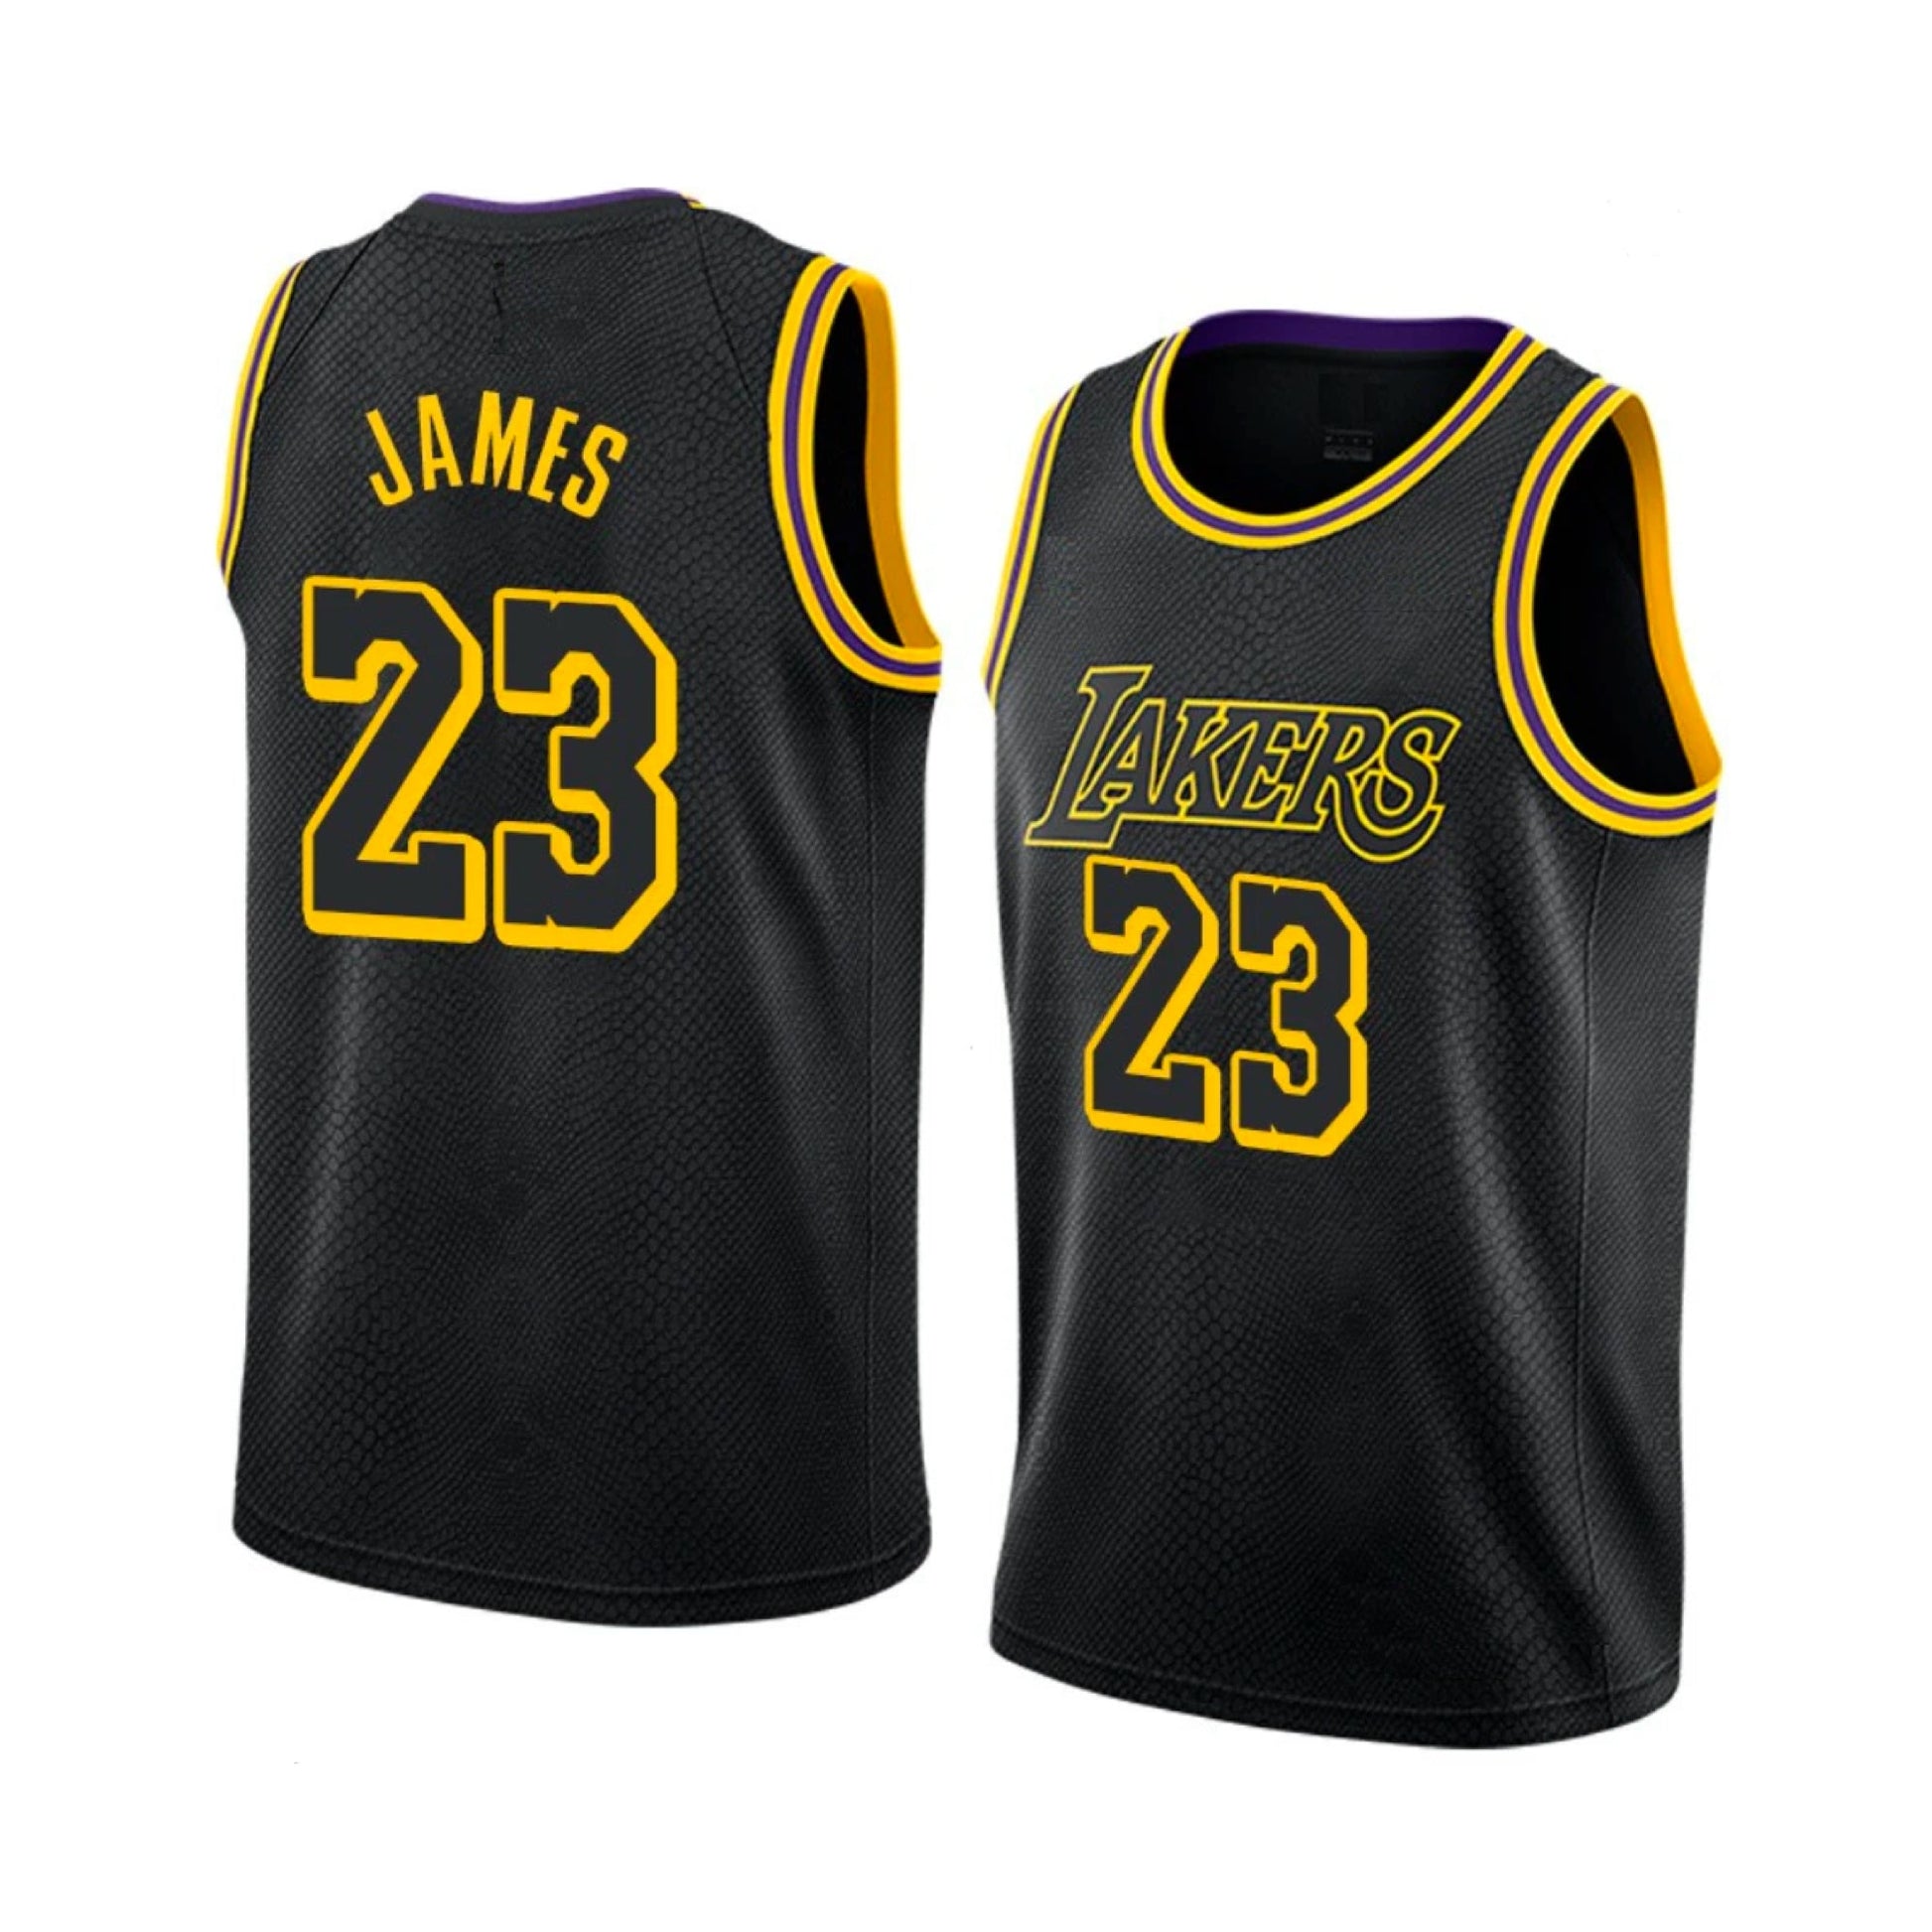 LA Lakers Basketball jerseys Gold